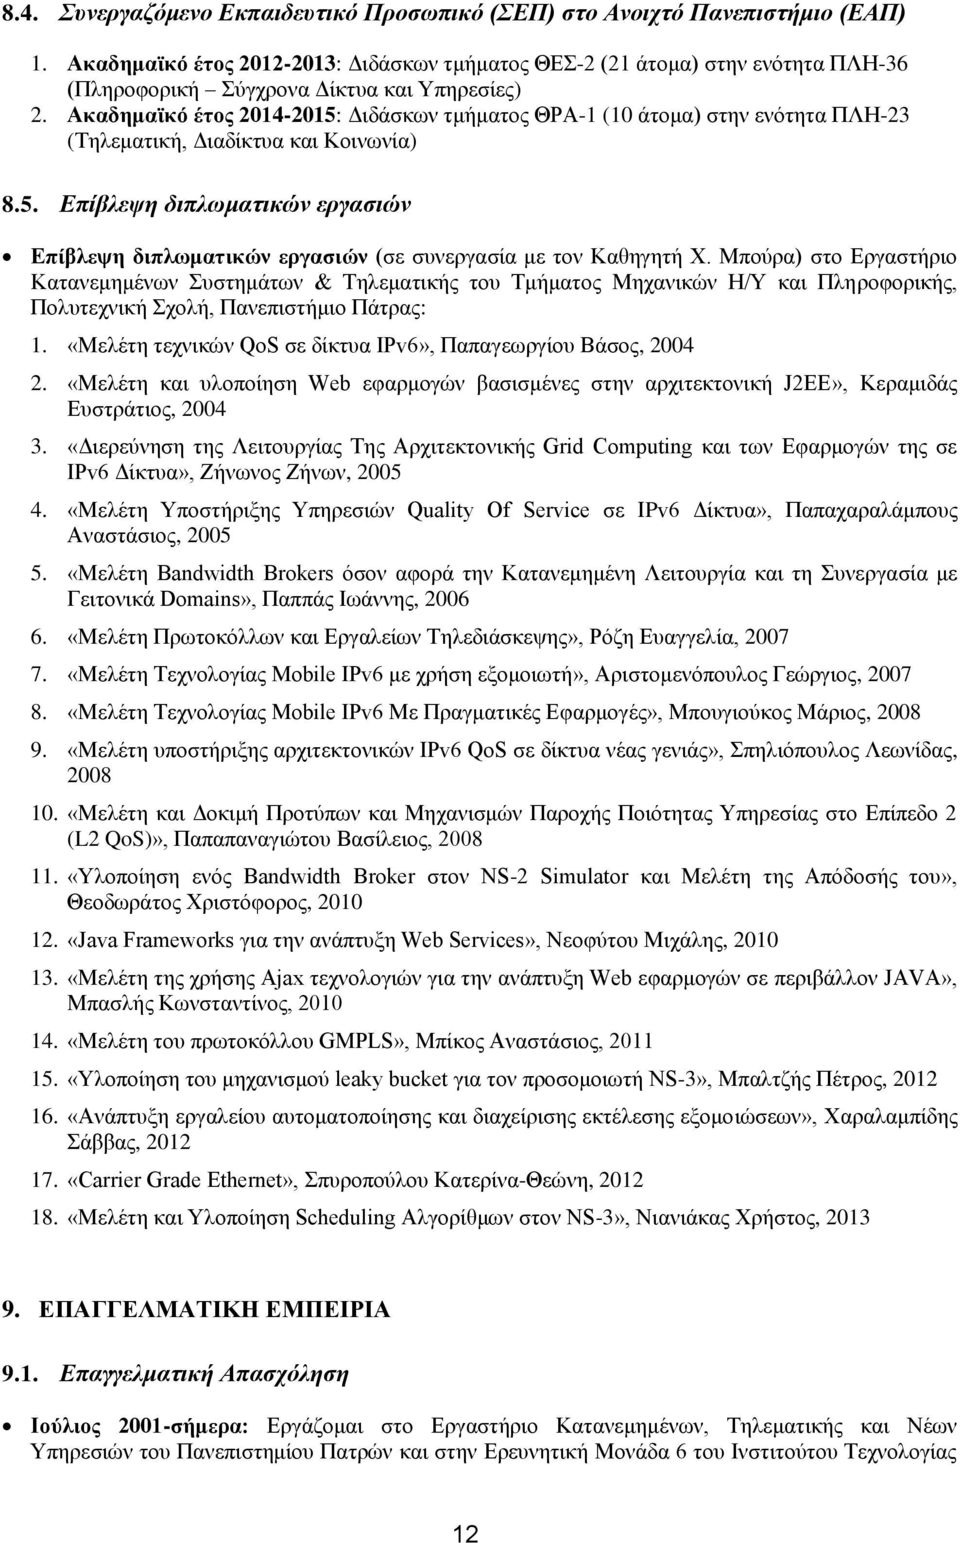 Ακαδημαϊκό έτος 2014-2015: Διδάσκων τμήματος ΘΡΑ-1 (10 άτομα) στην ενότητα ΠΛΗ-23 (Τηλεματική, Διαδίκτυα και Κοινωνία) 8.5. Επίβλεψη διπλωματικών εργασιών Επίβλεψη διπλωματικών εργασιών (σε συνεργασία με τον Καθηγητή Χ.